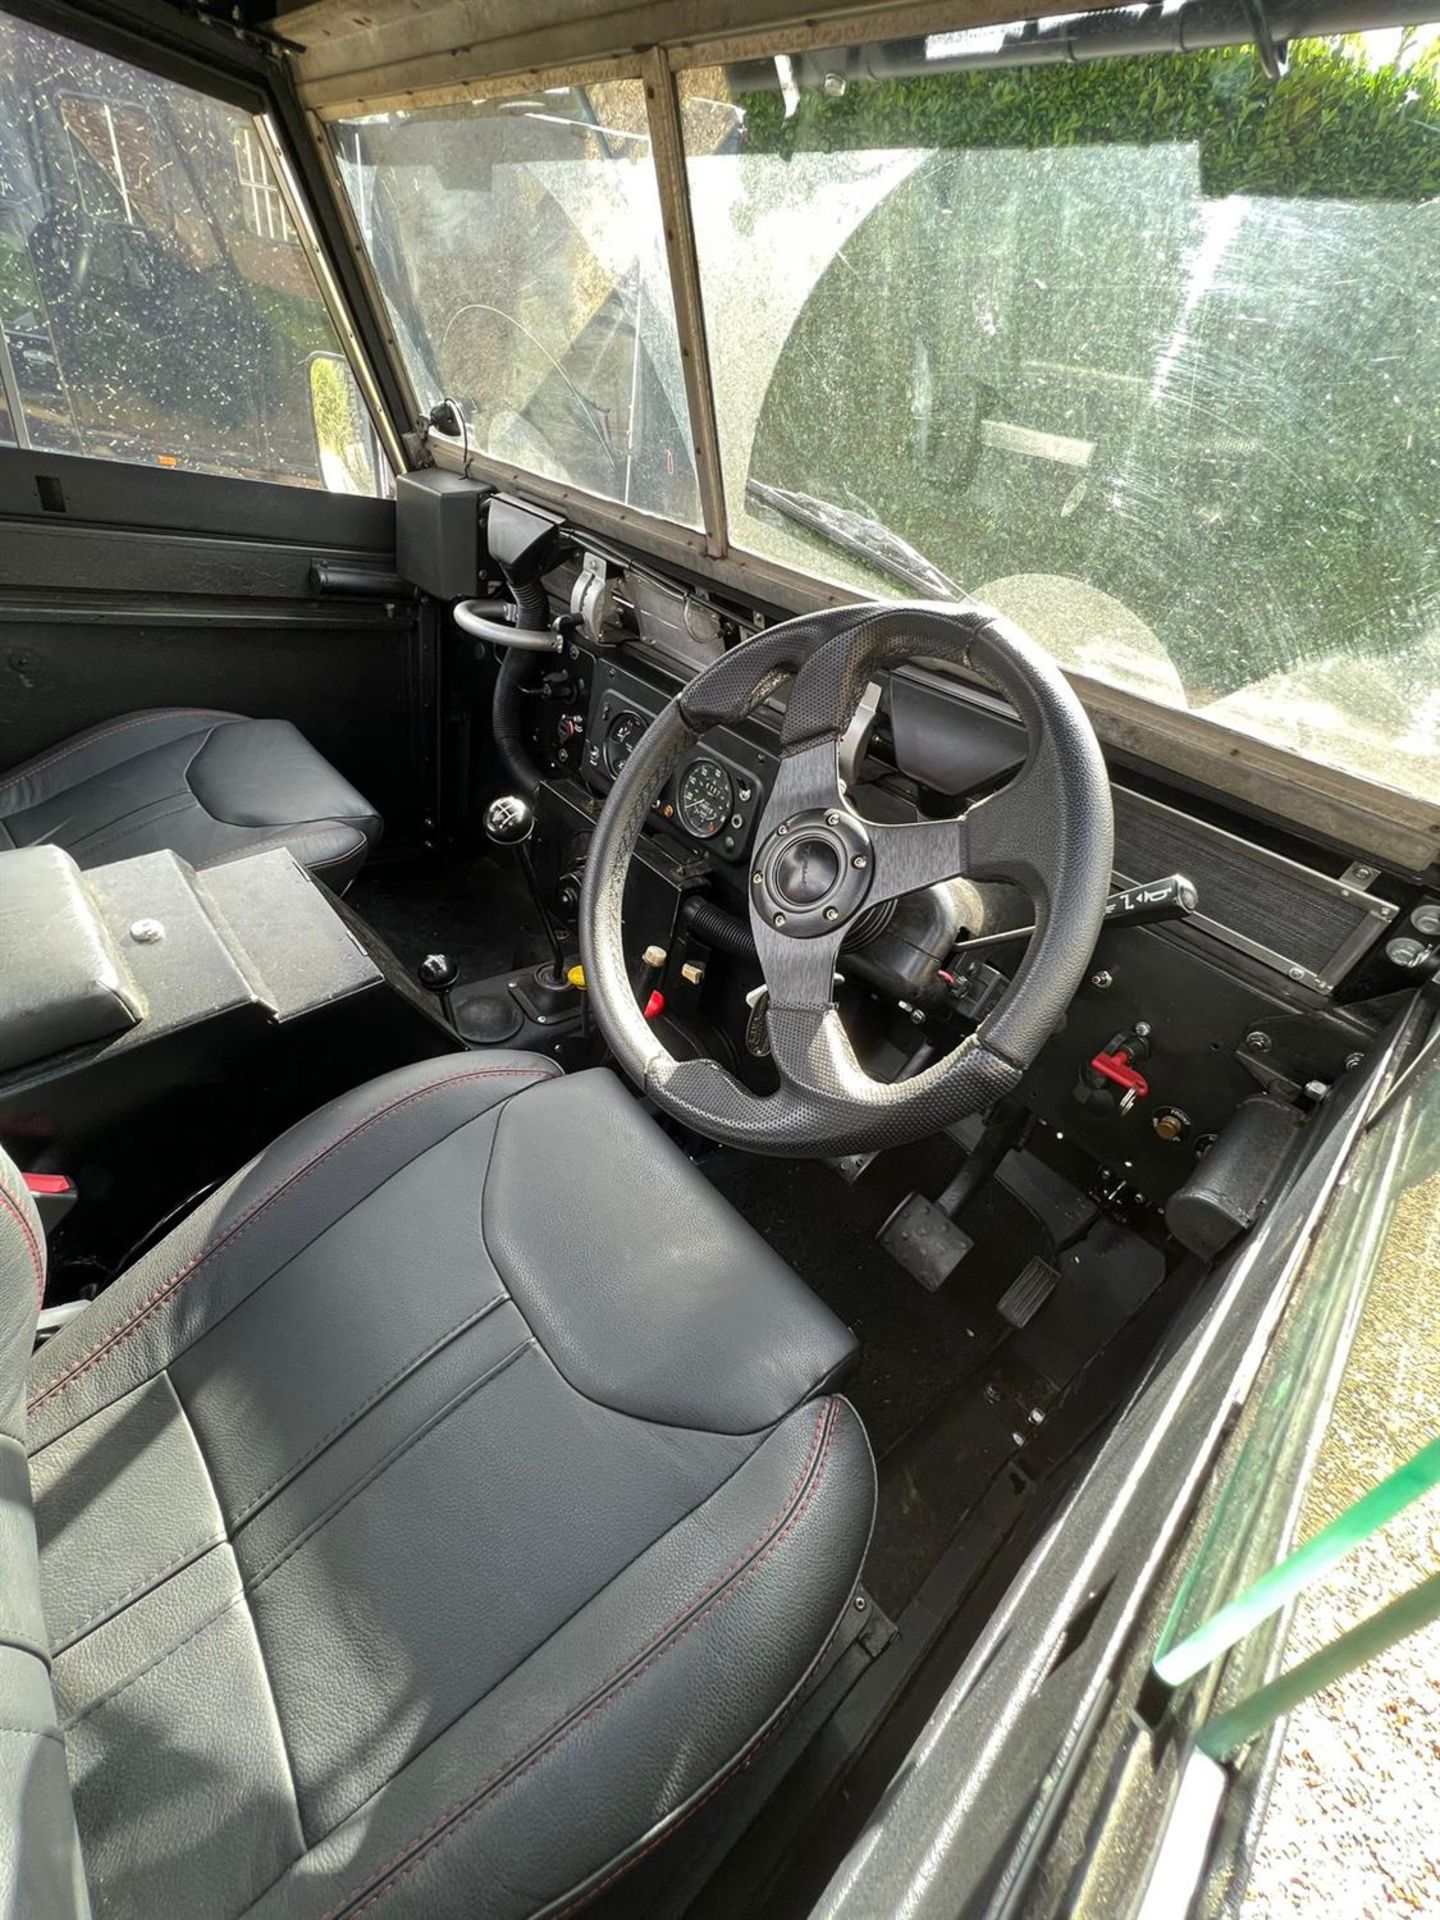 1992 Land Rover Series III Lightweight - Image 2 of 10